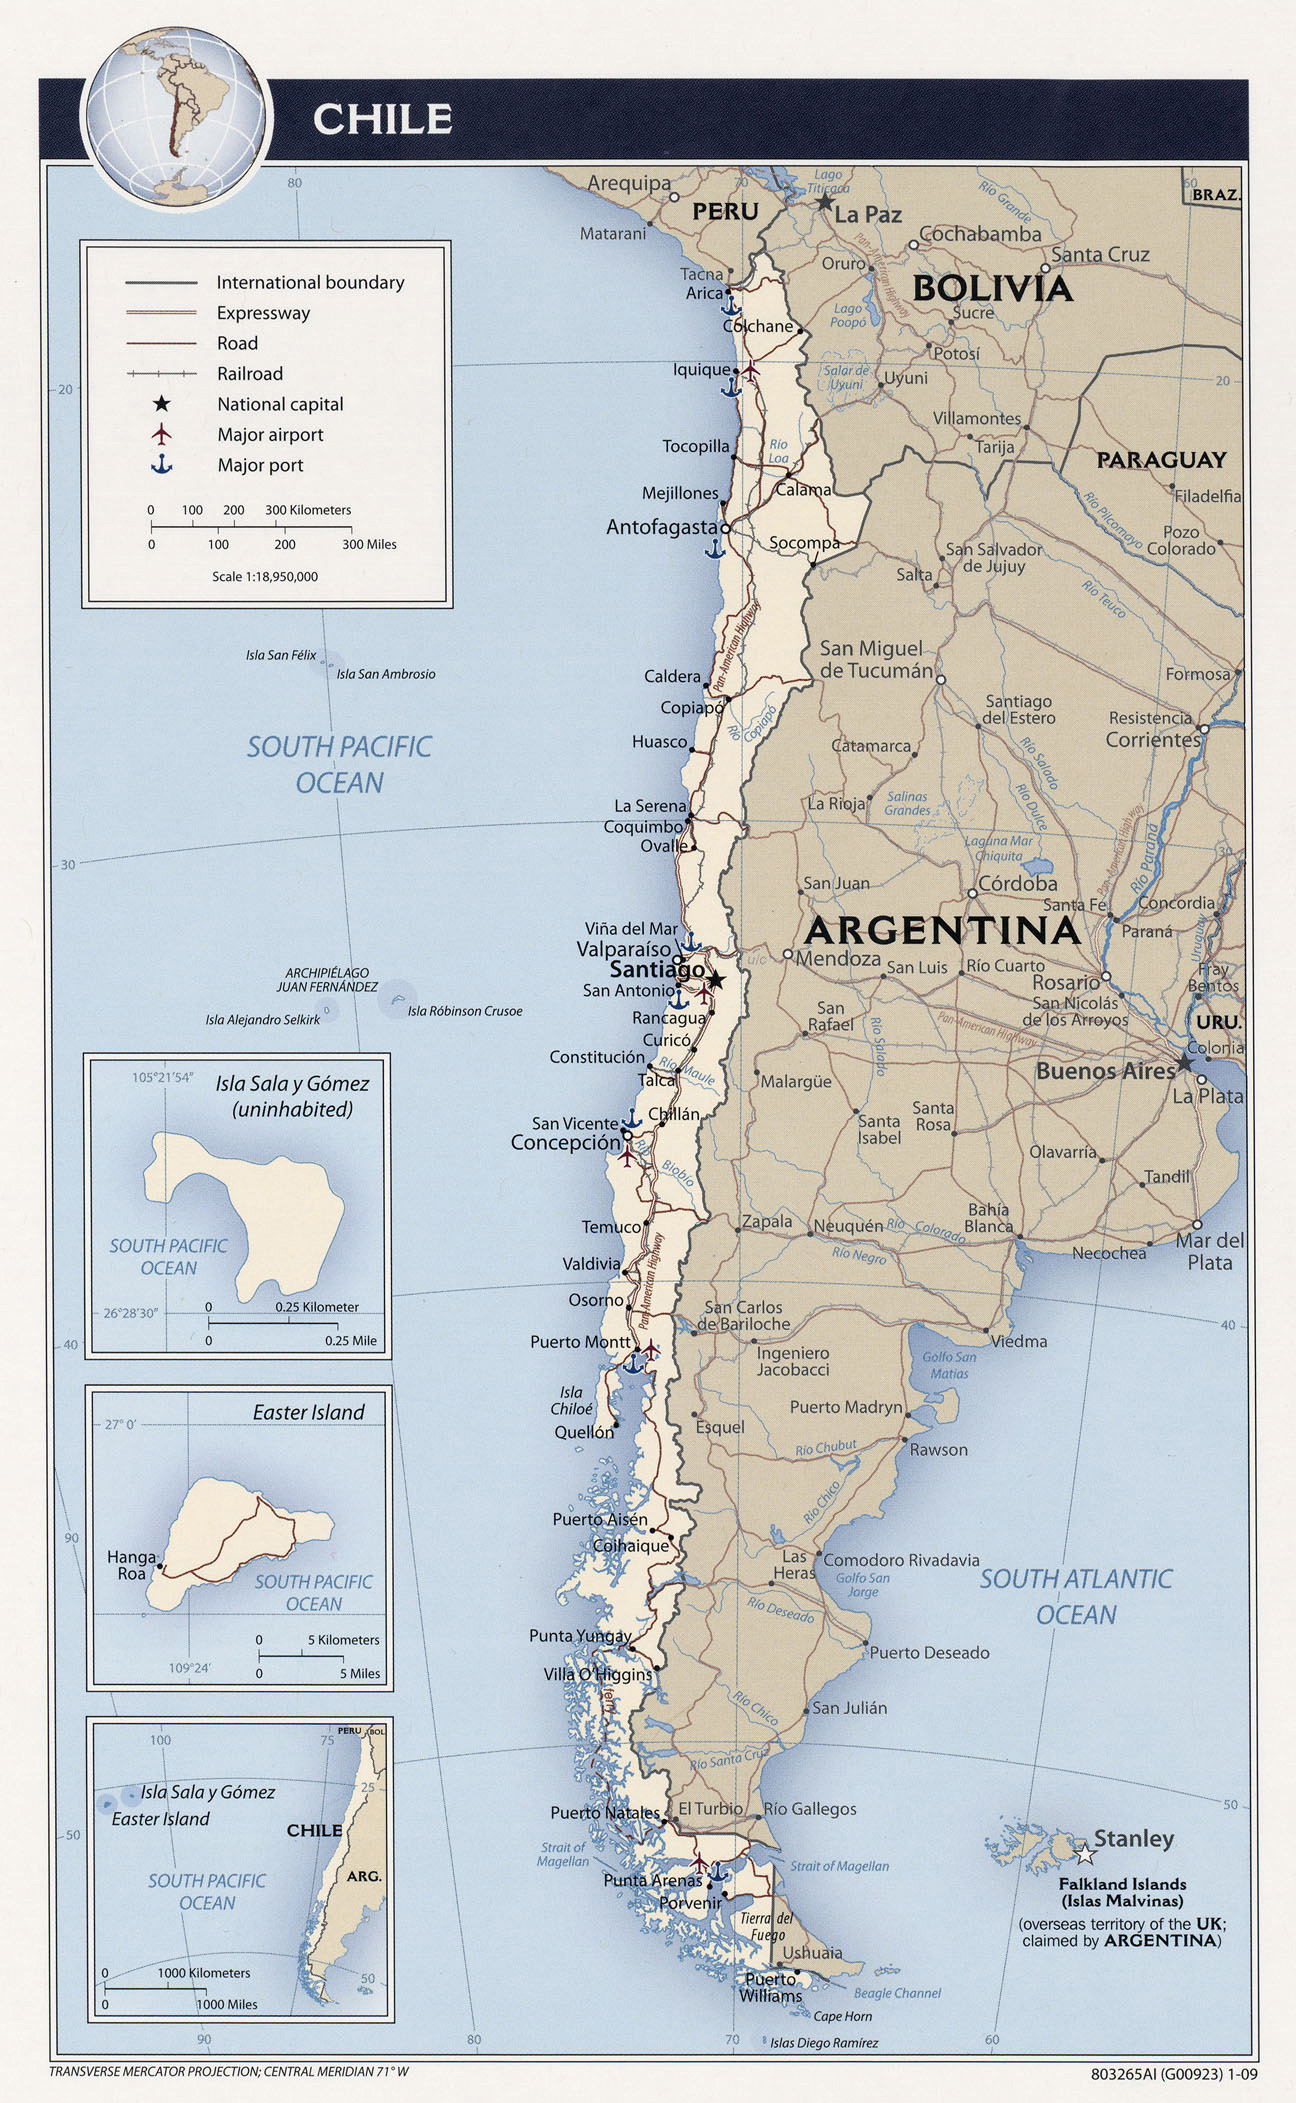 Большая детальная политическая и административная карта Чили. Чили –большая подробная политико-административная карта